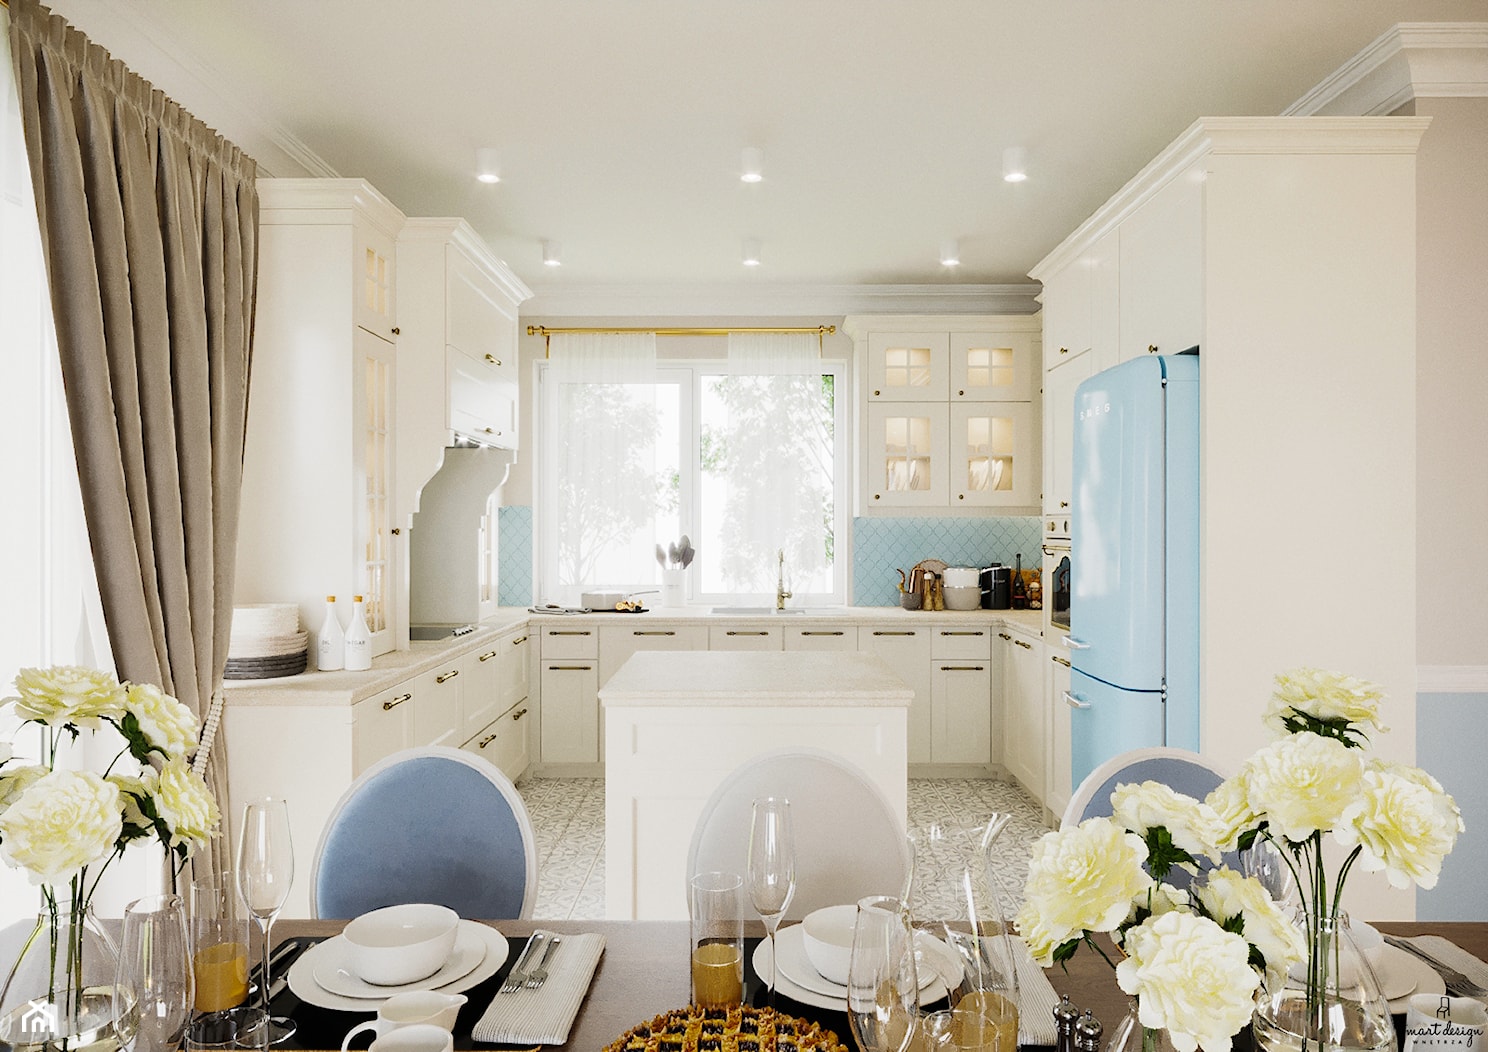 Kuchnia w stylu klasycznym/dom prowansalski - zdjęcie od Smart Design Sara Tokarczyk - Homebook